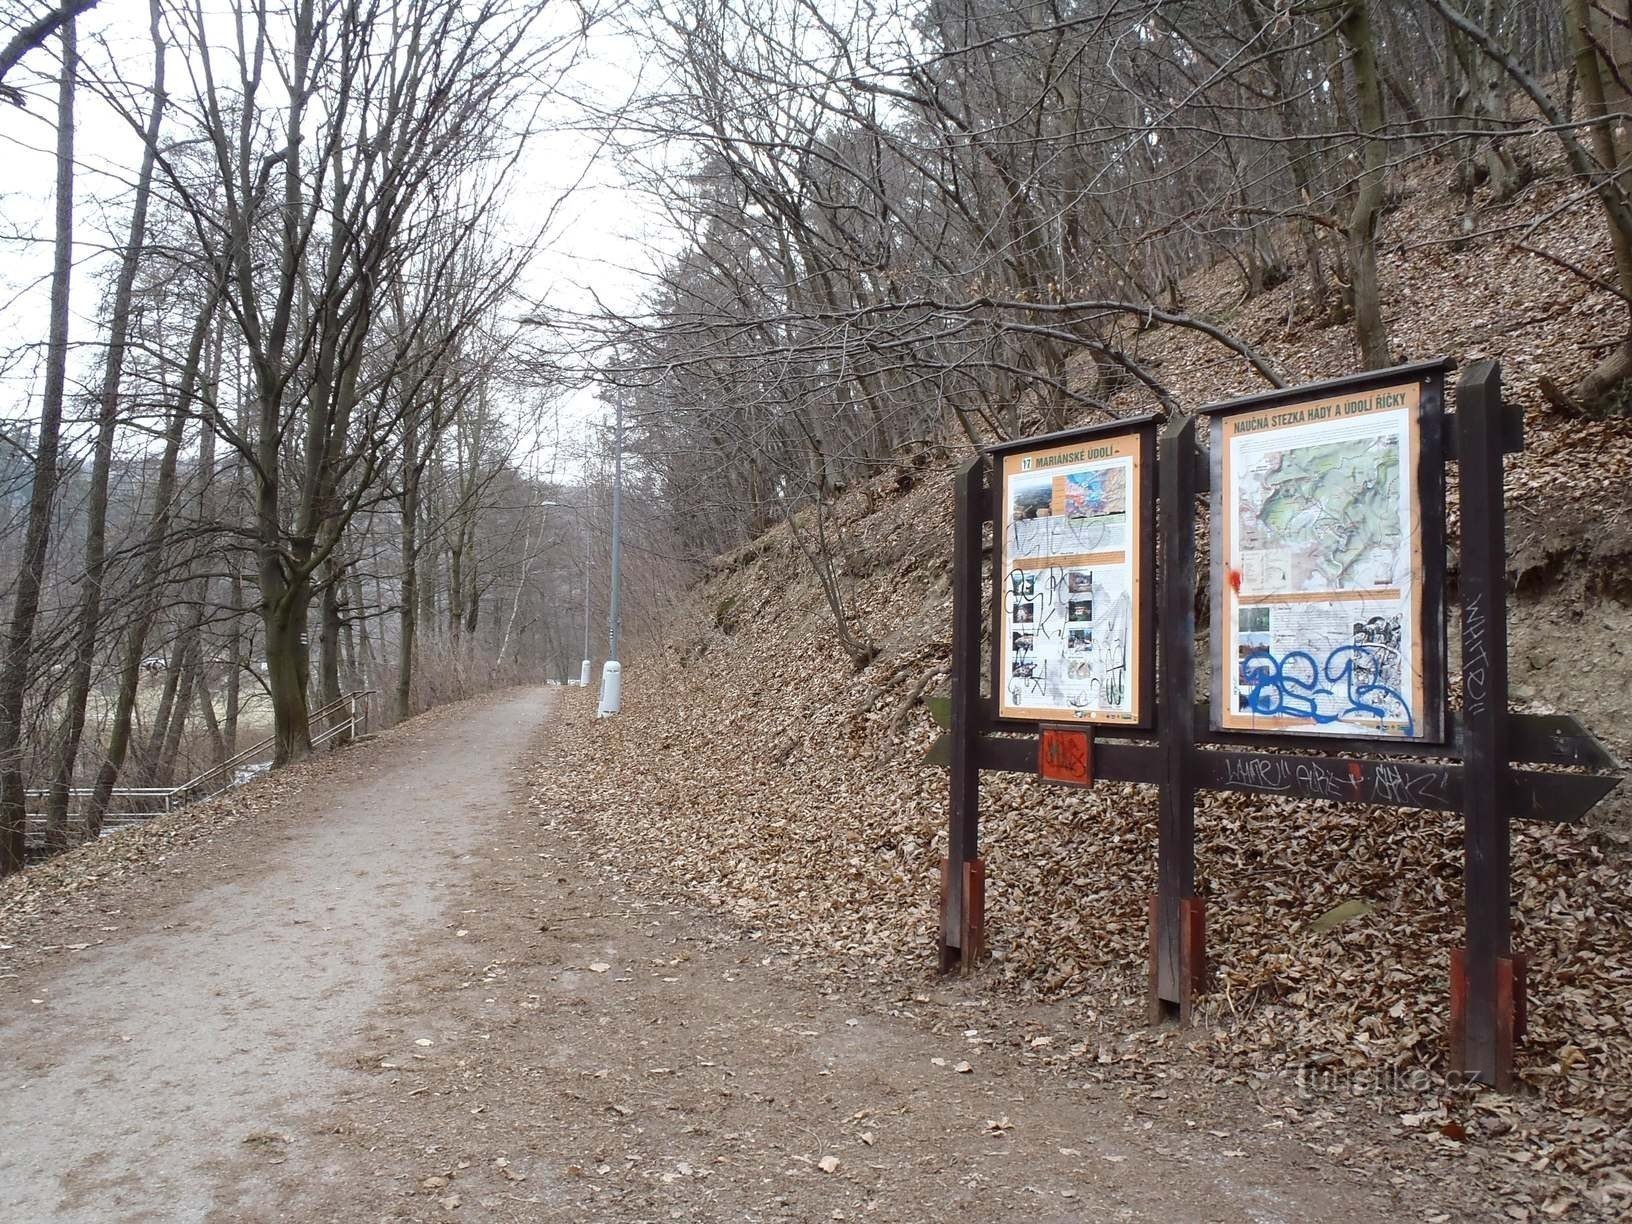 Jena dos caminhos para o Mariánské údolí (sinal azul e vermelho) - 6.2.2012 de fevereiro de XNUMX